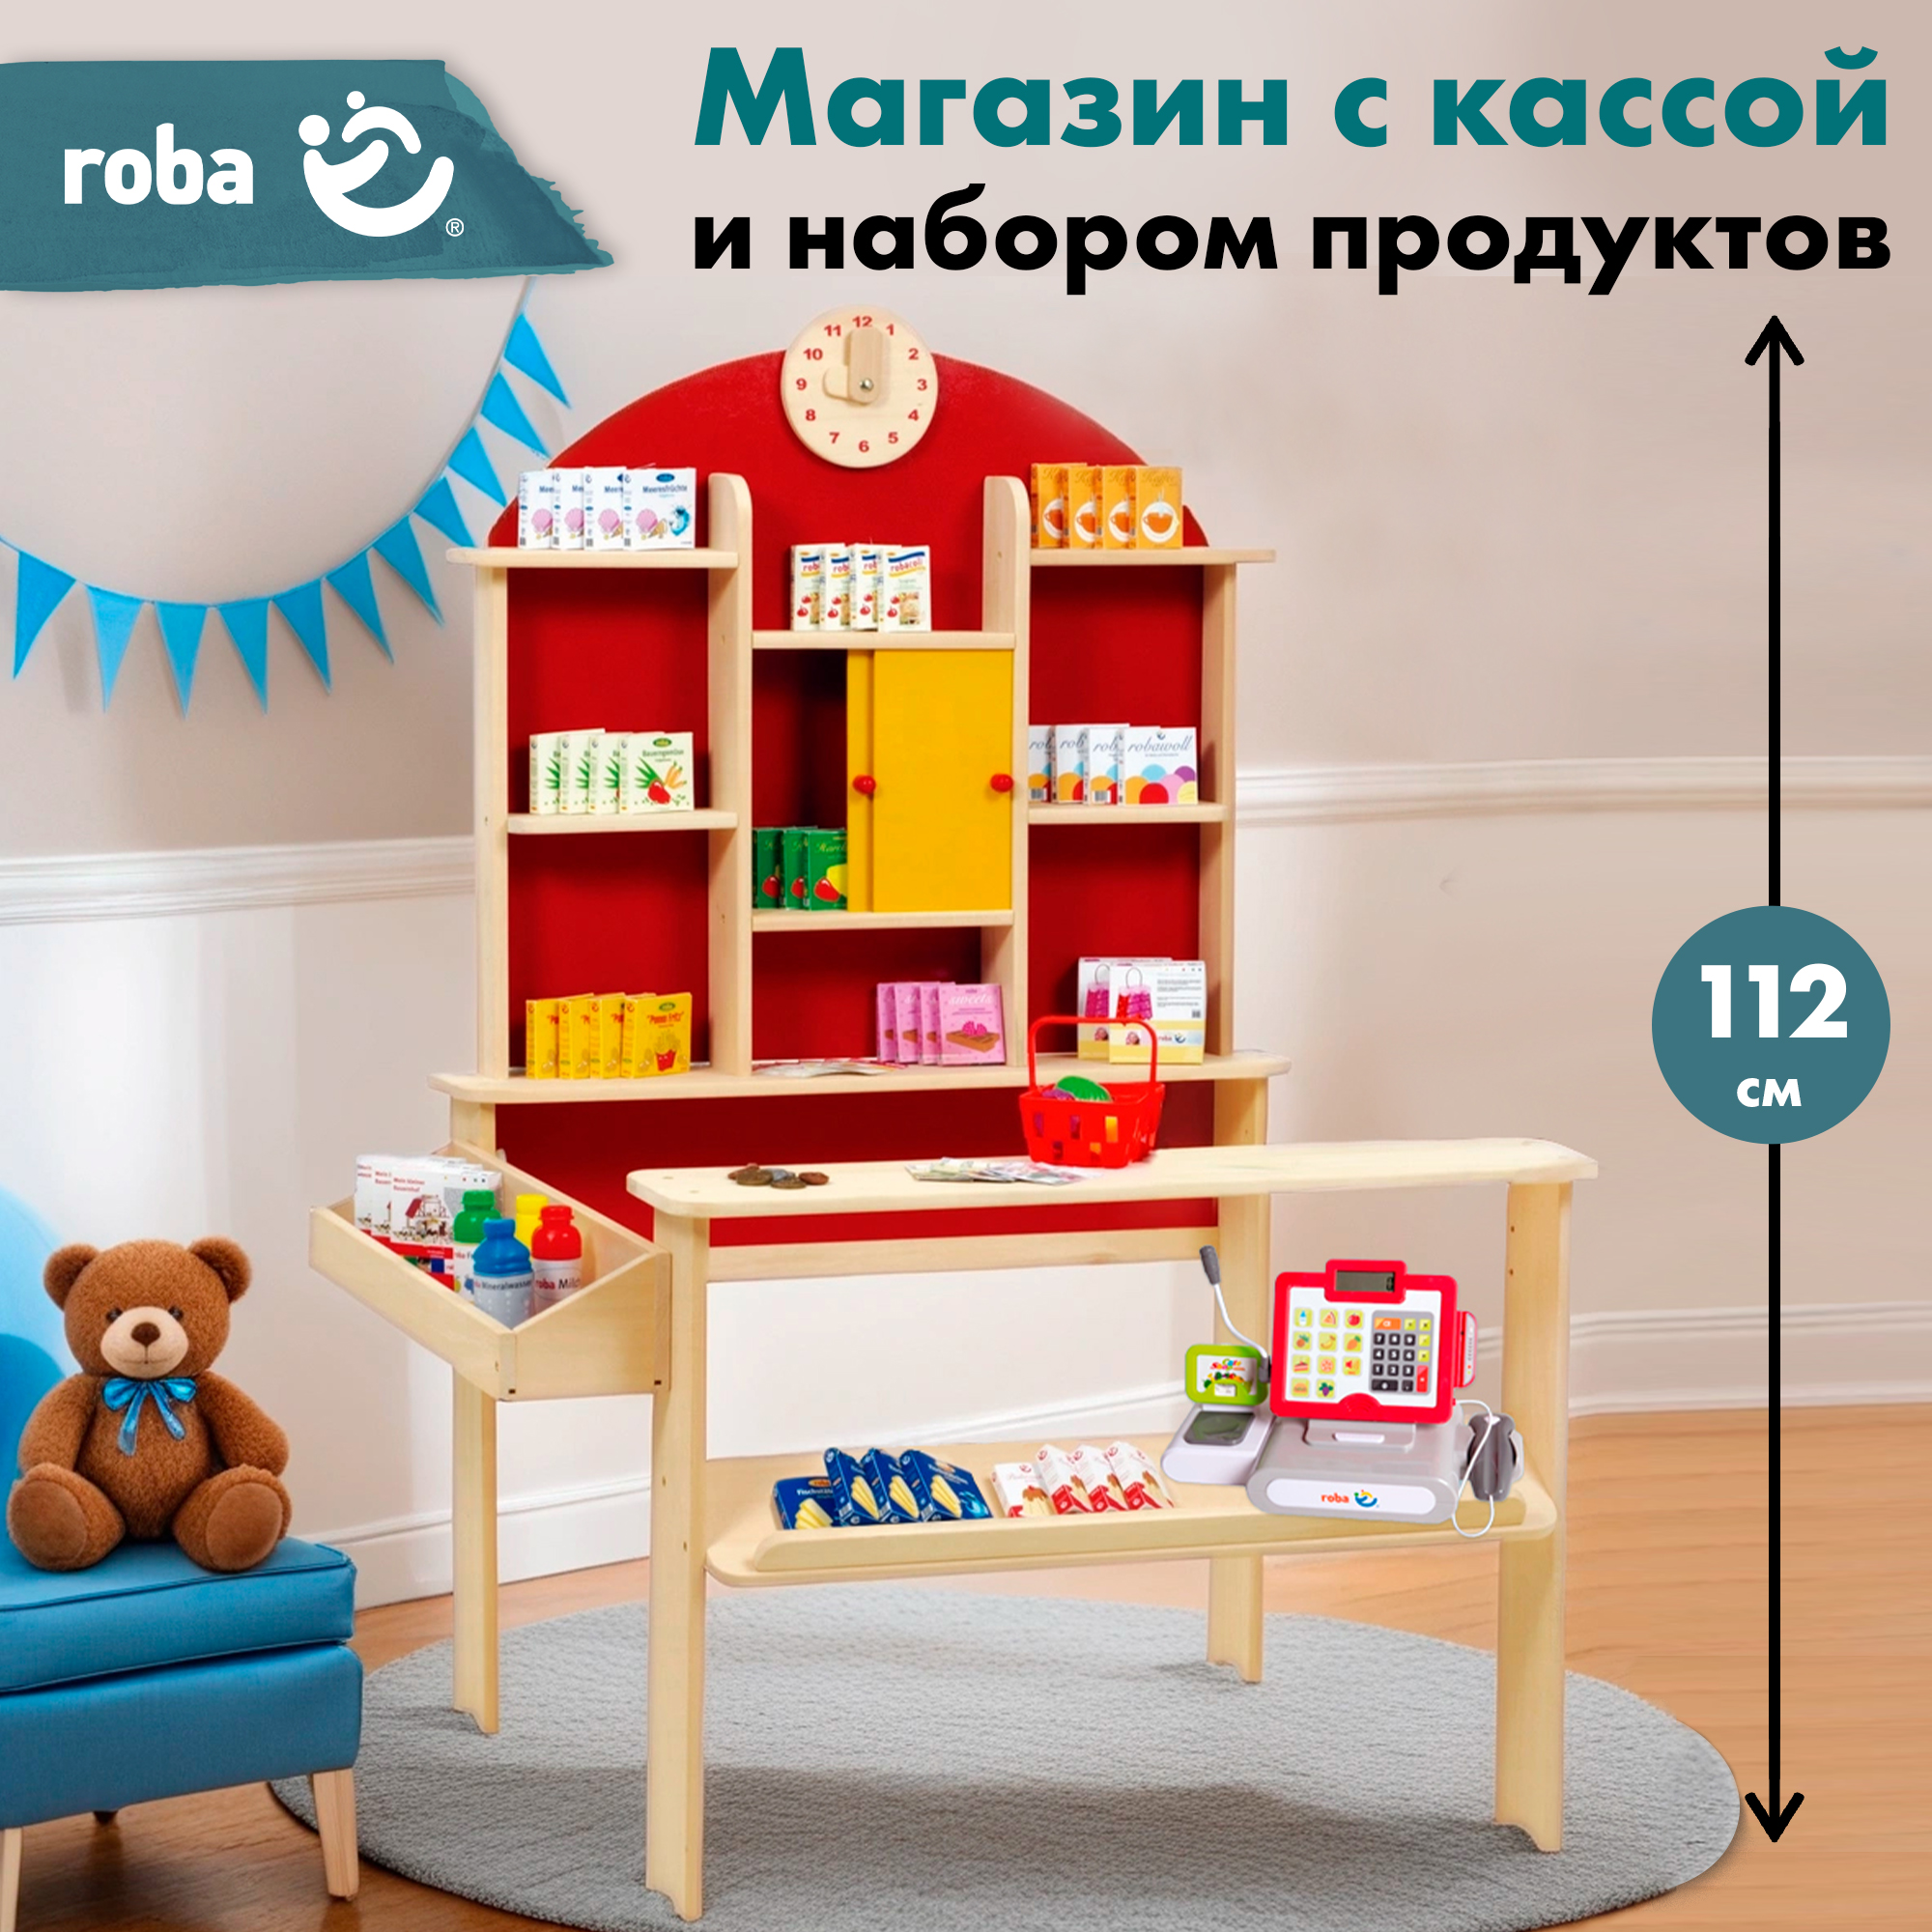 Детский магазин Roba игровой набор: супермаркет с игрушечными продуктами и кассой набор для гадания с картами